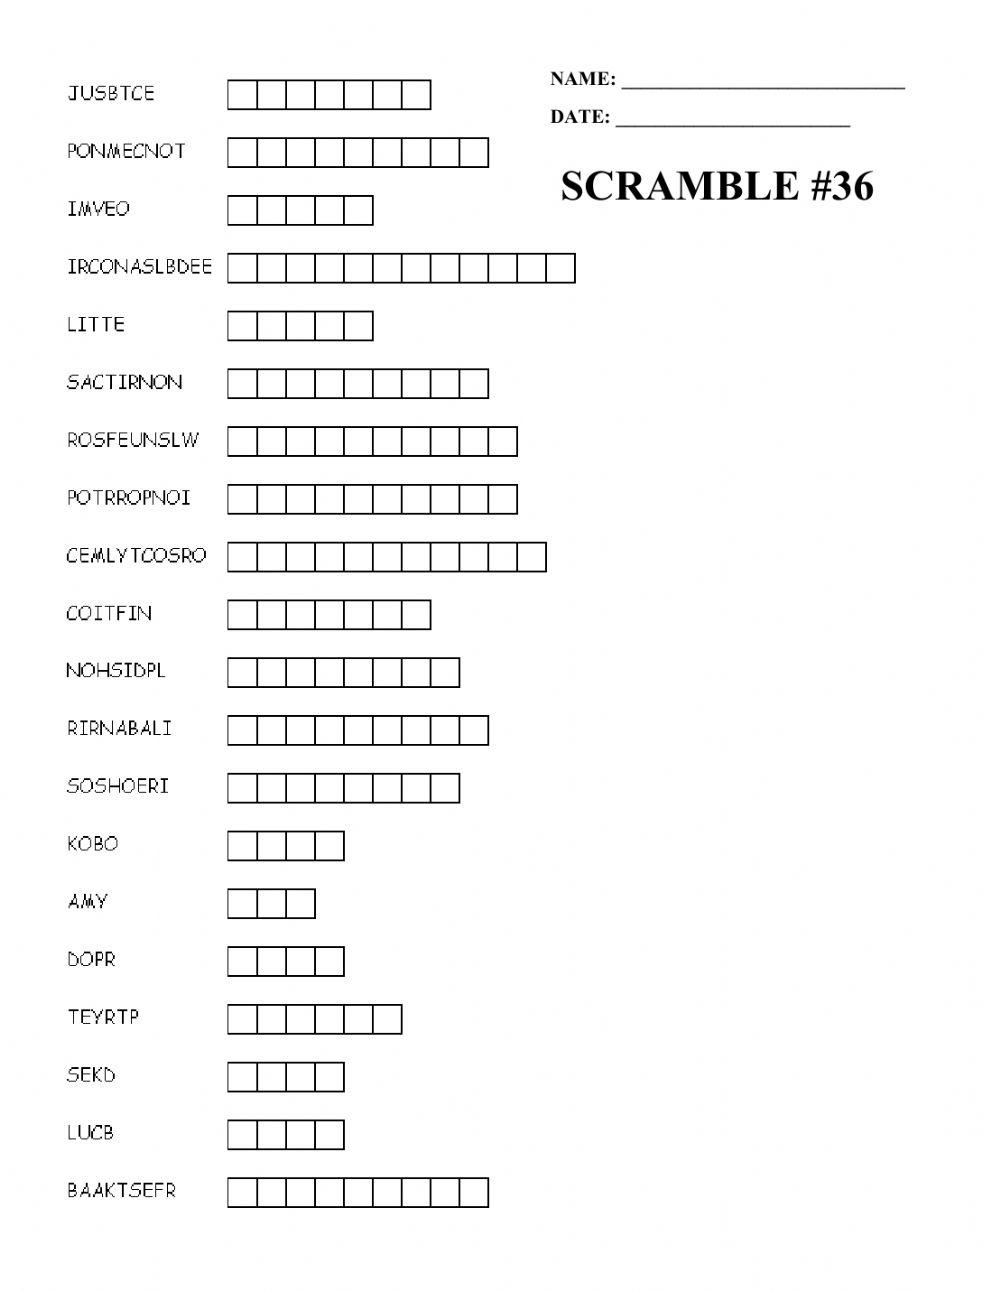 Scramble -36